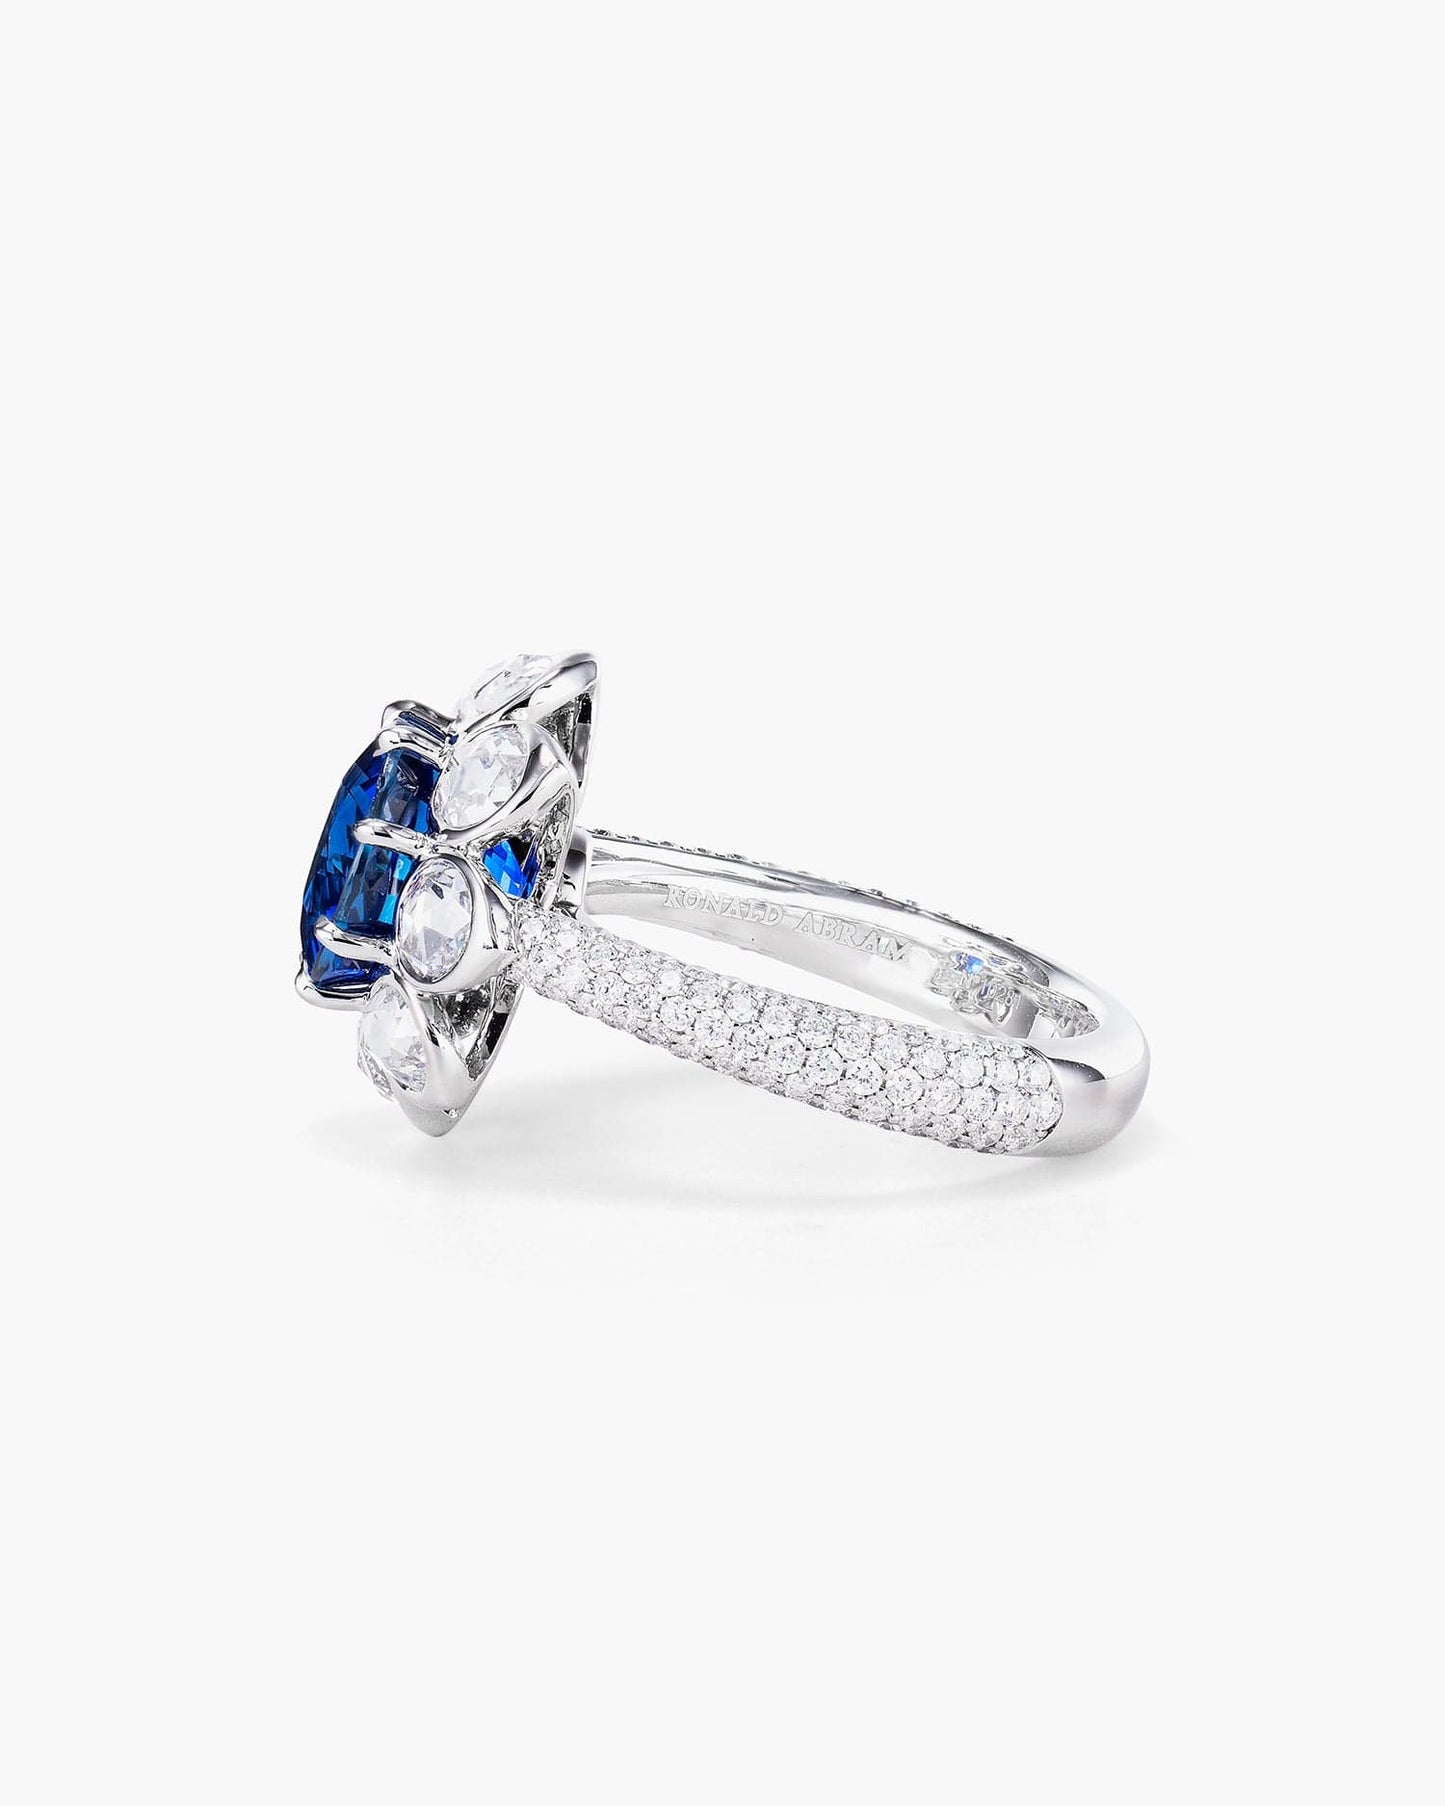 4.00 carat Round Cut Ceylon Sapphire and Diamond Ring